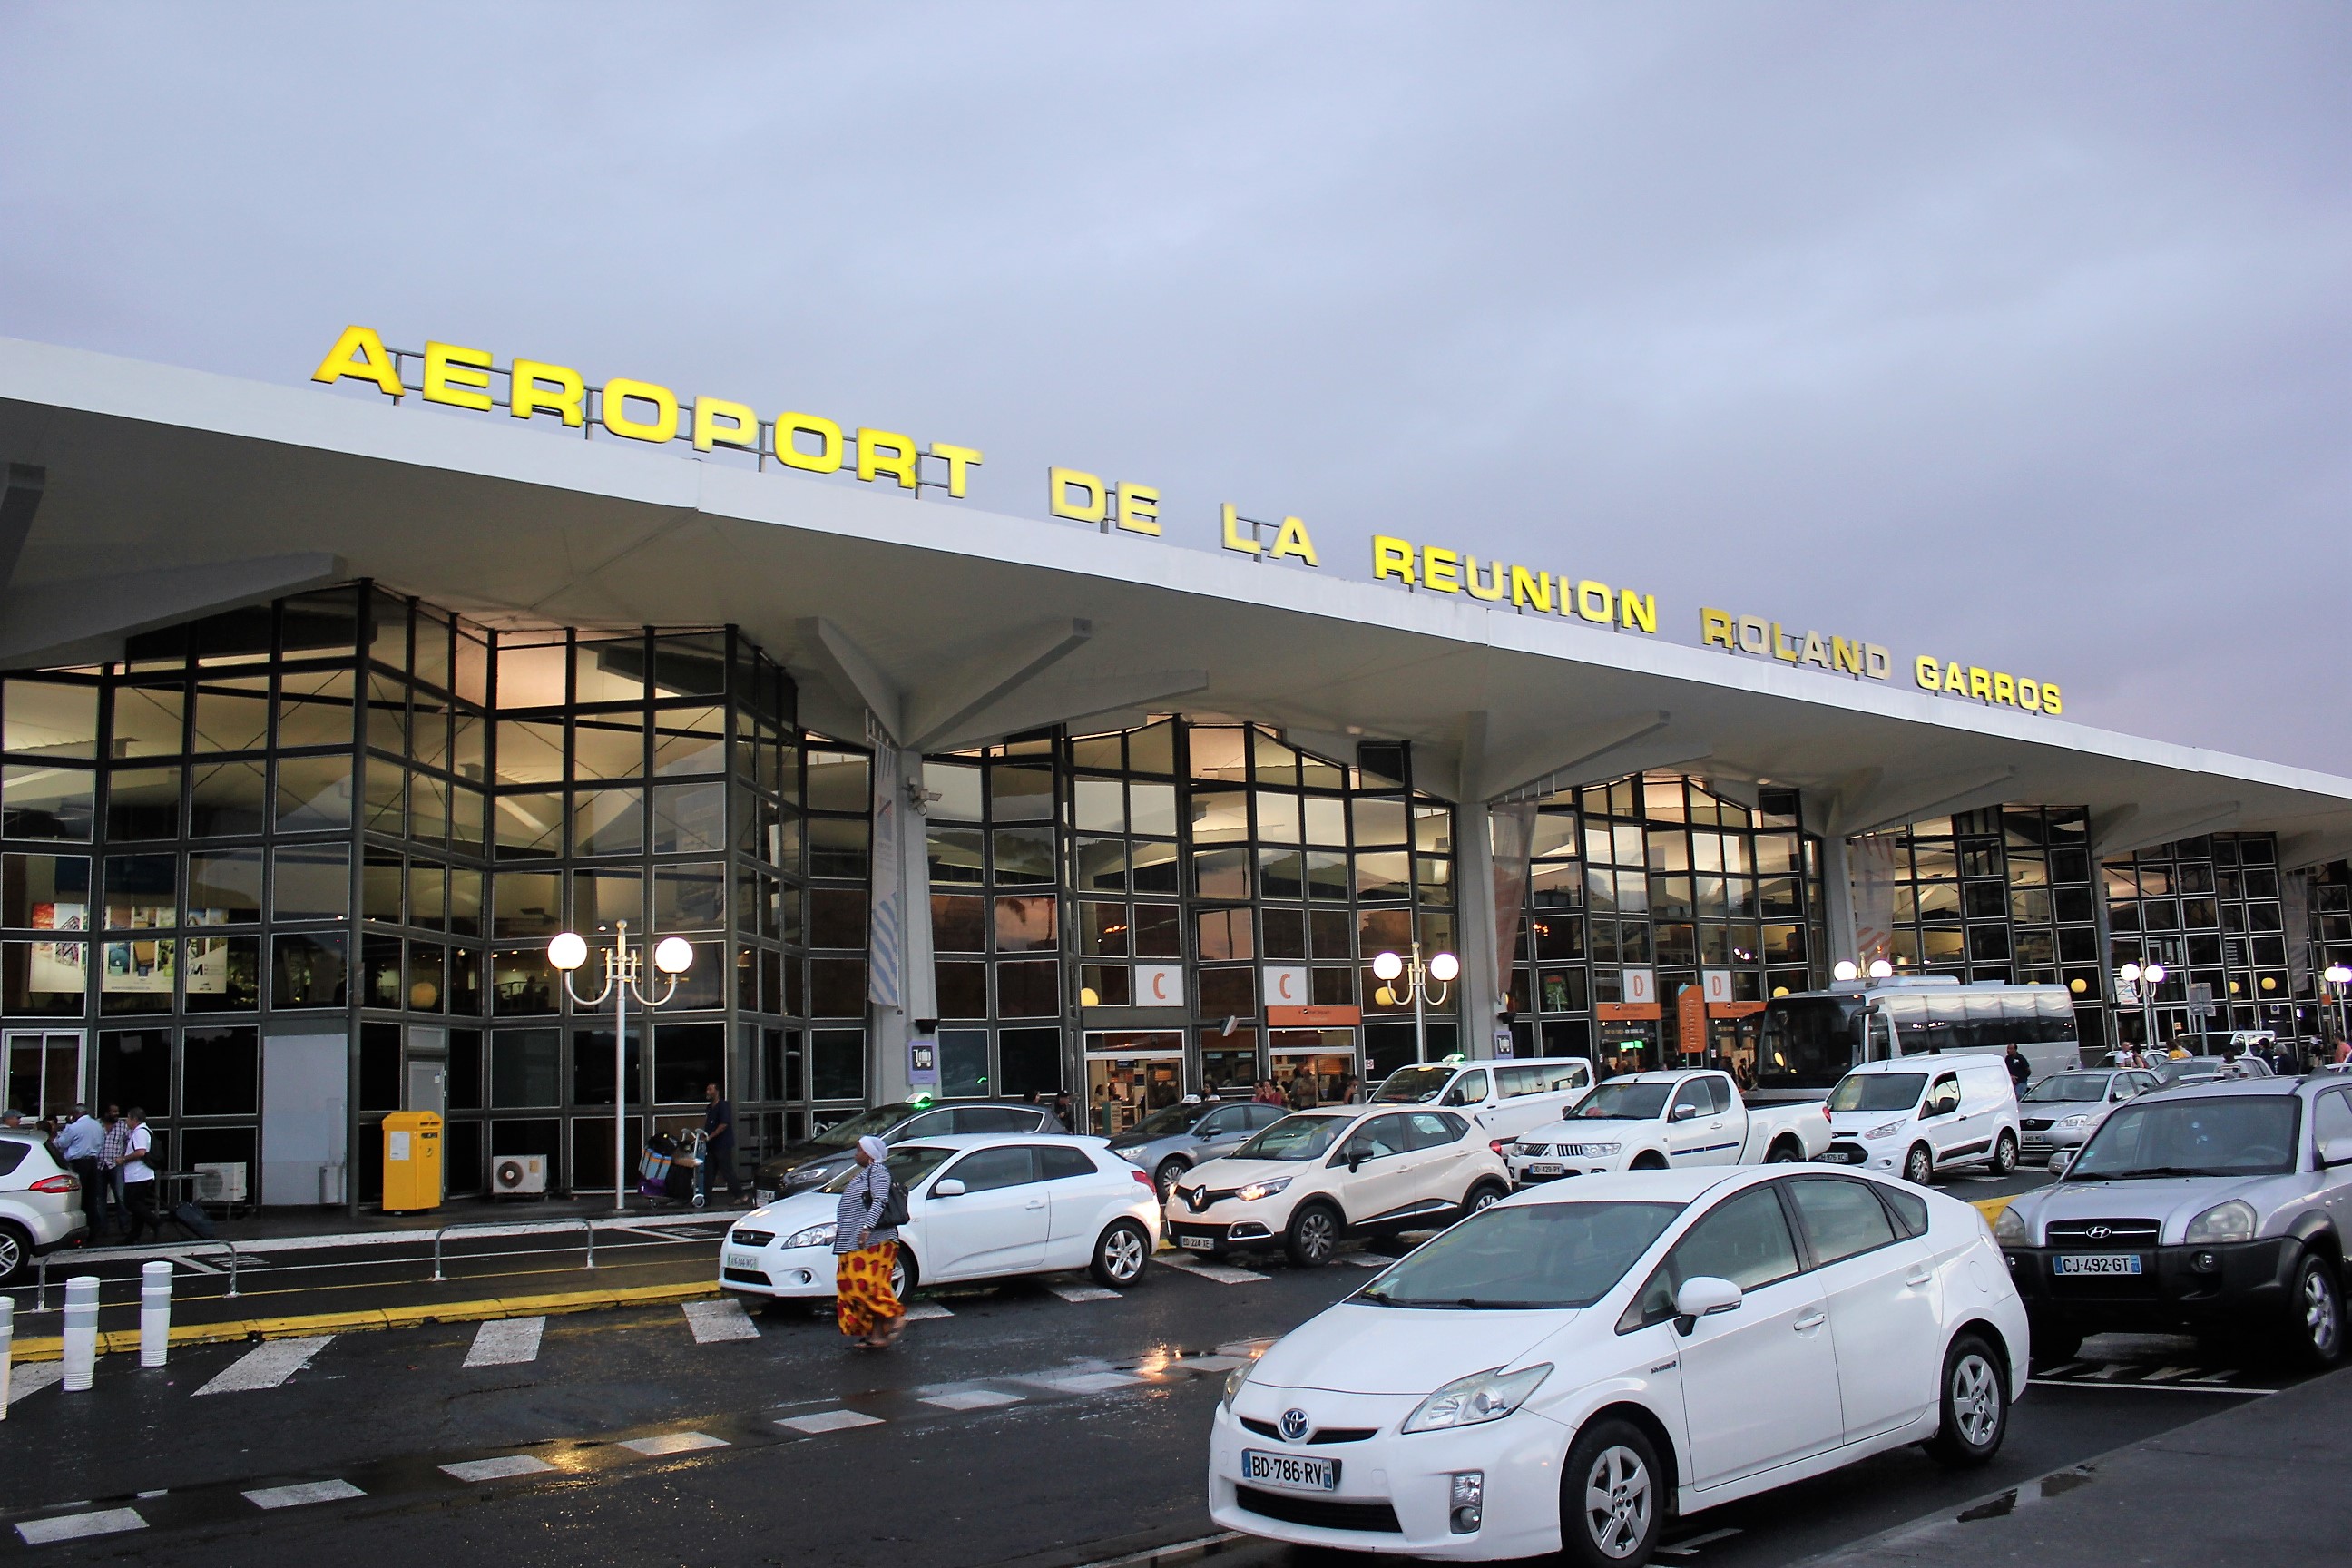 Covid-19: Les parlementaires de La Reunion demandent le confinement strict des voyageurs